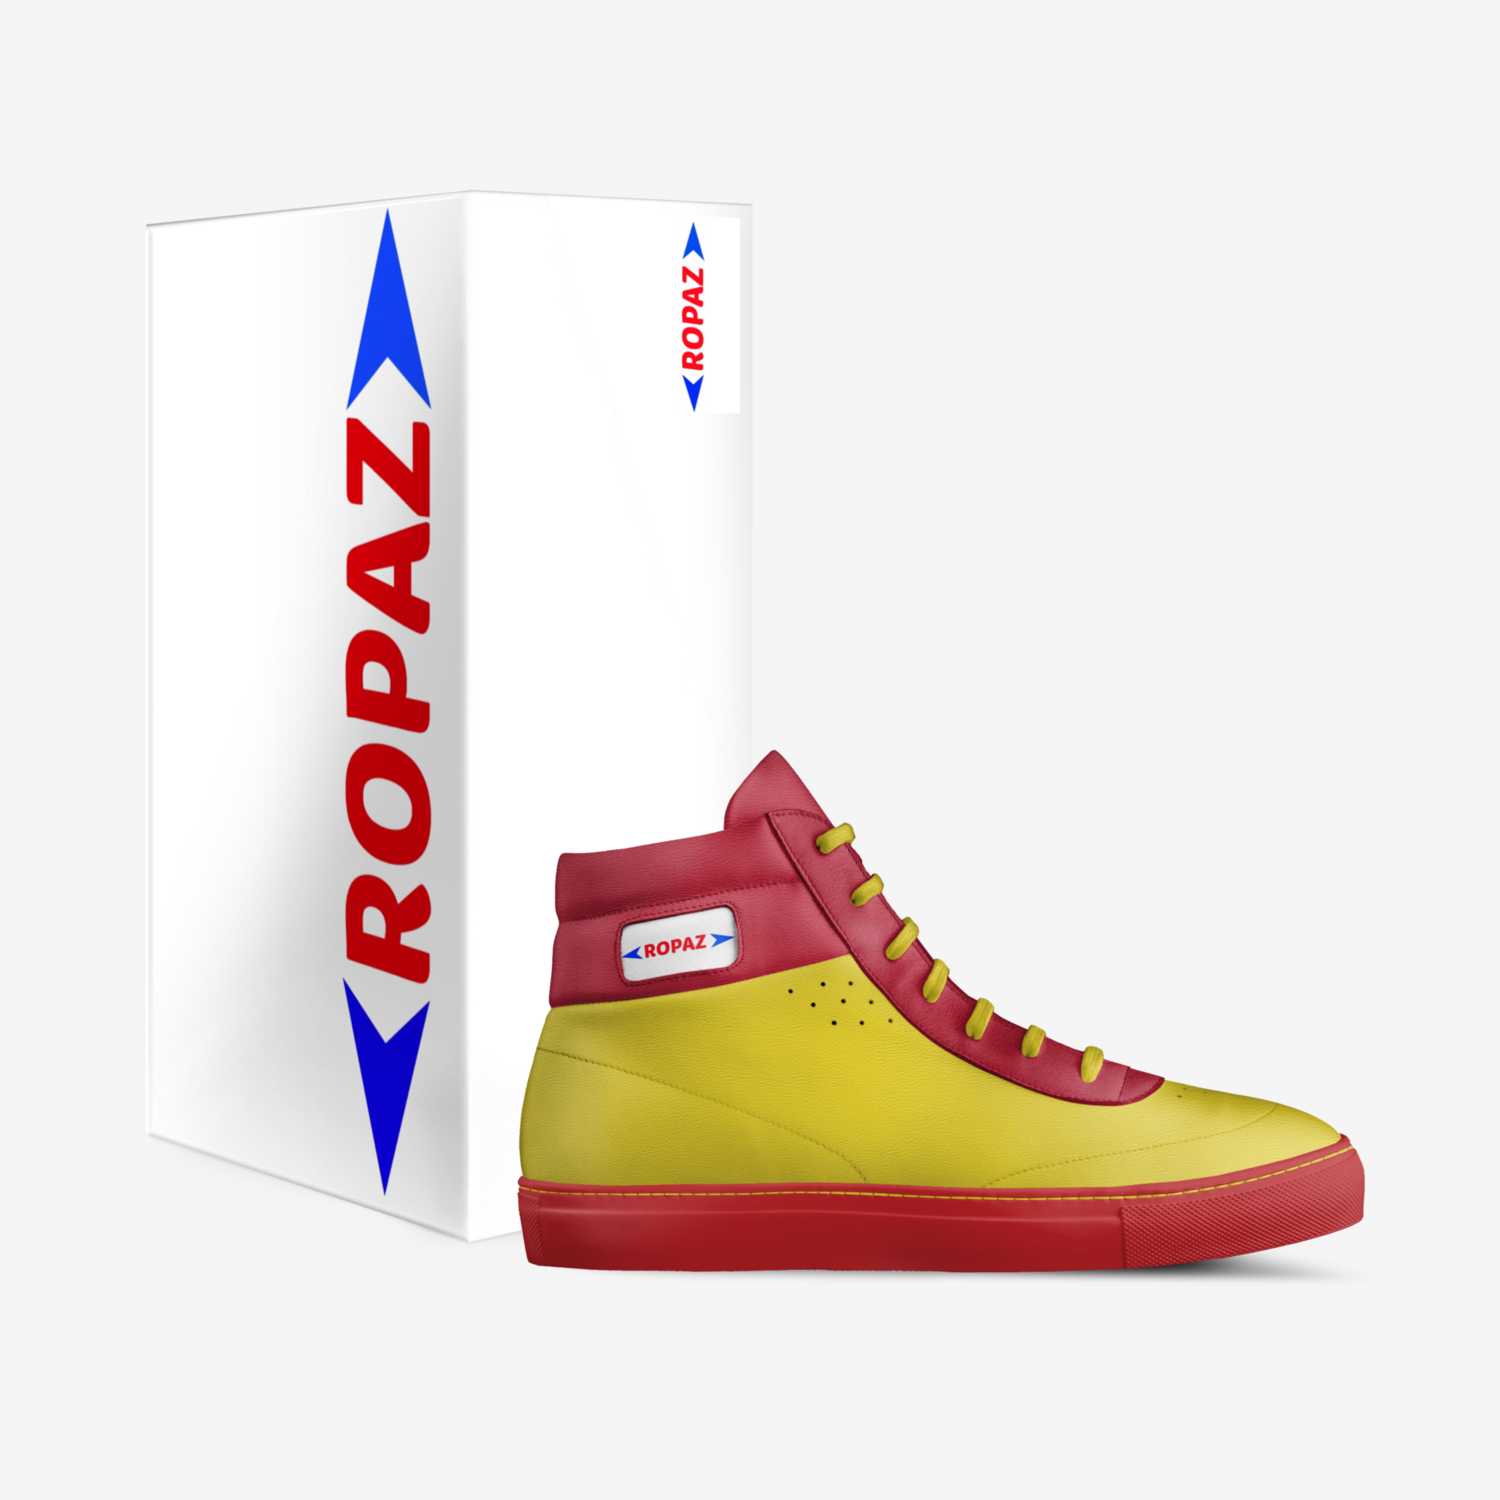 Ropaz custom made in Italy shoes by Ropafadzo Mshayavanhu | Box view